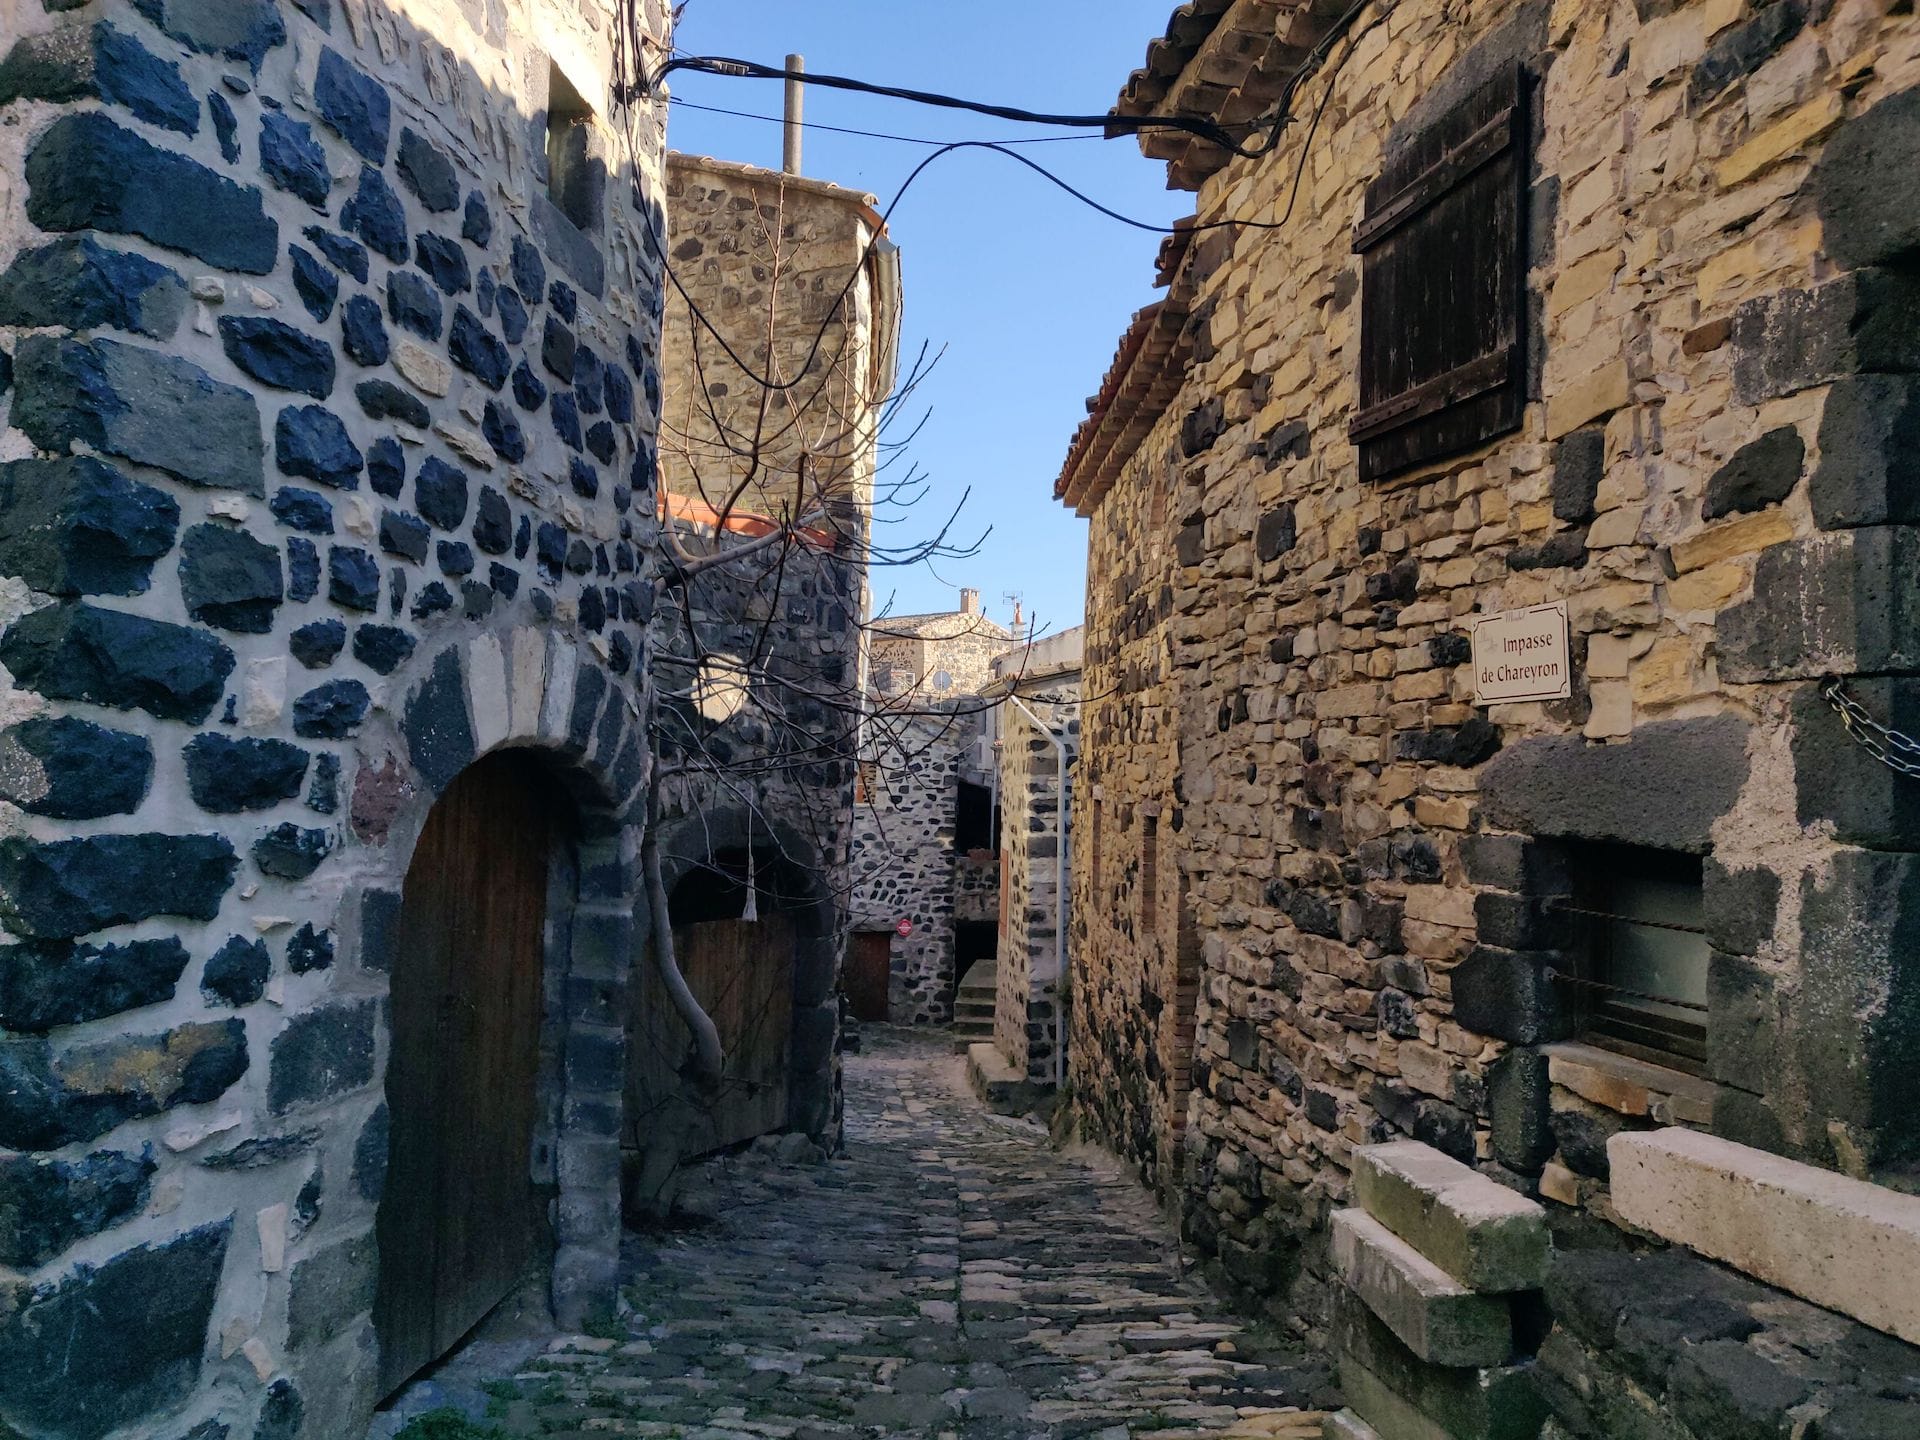 Une ruelle étroite à Mirabel, les murs des maisons sont faits de pierre blanche et noire